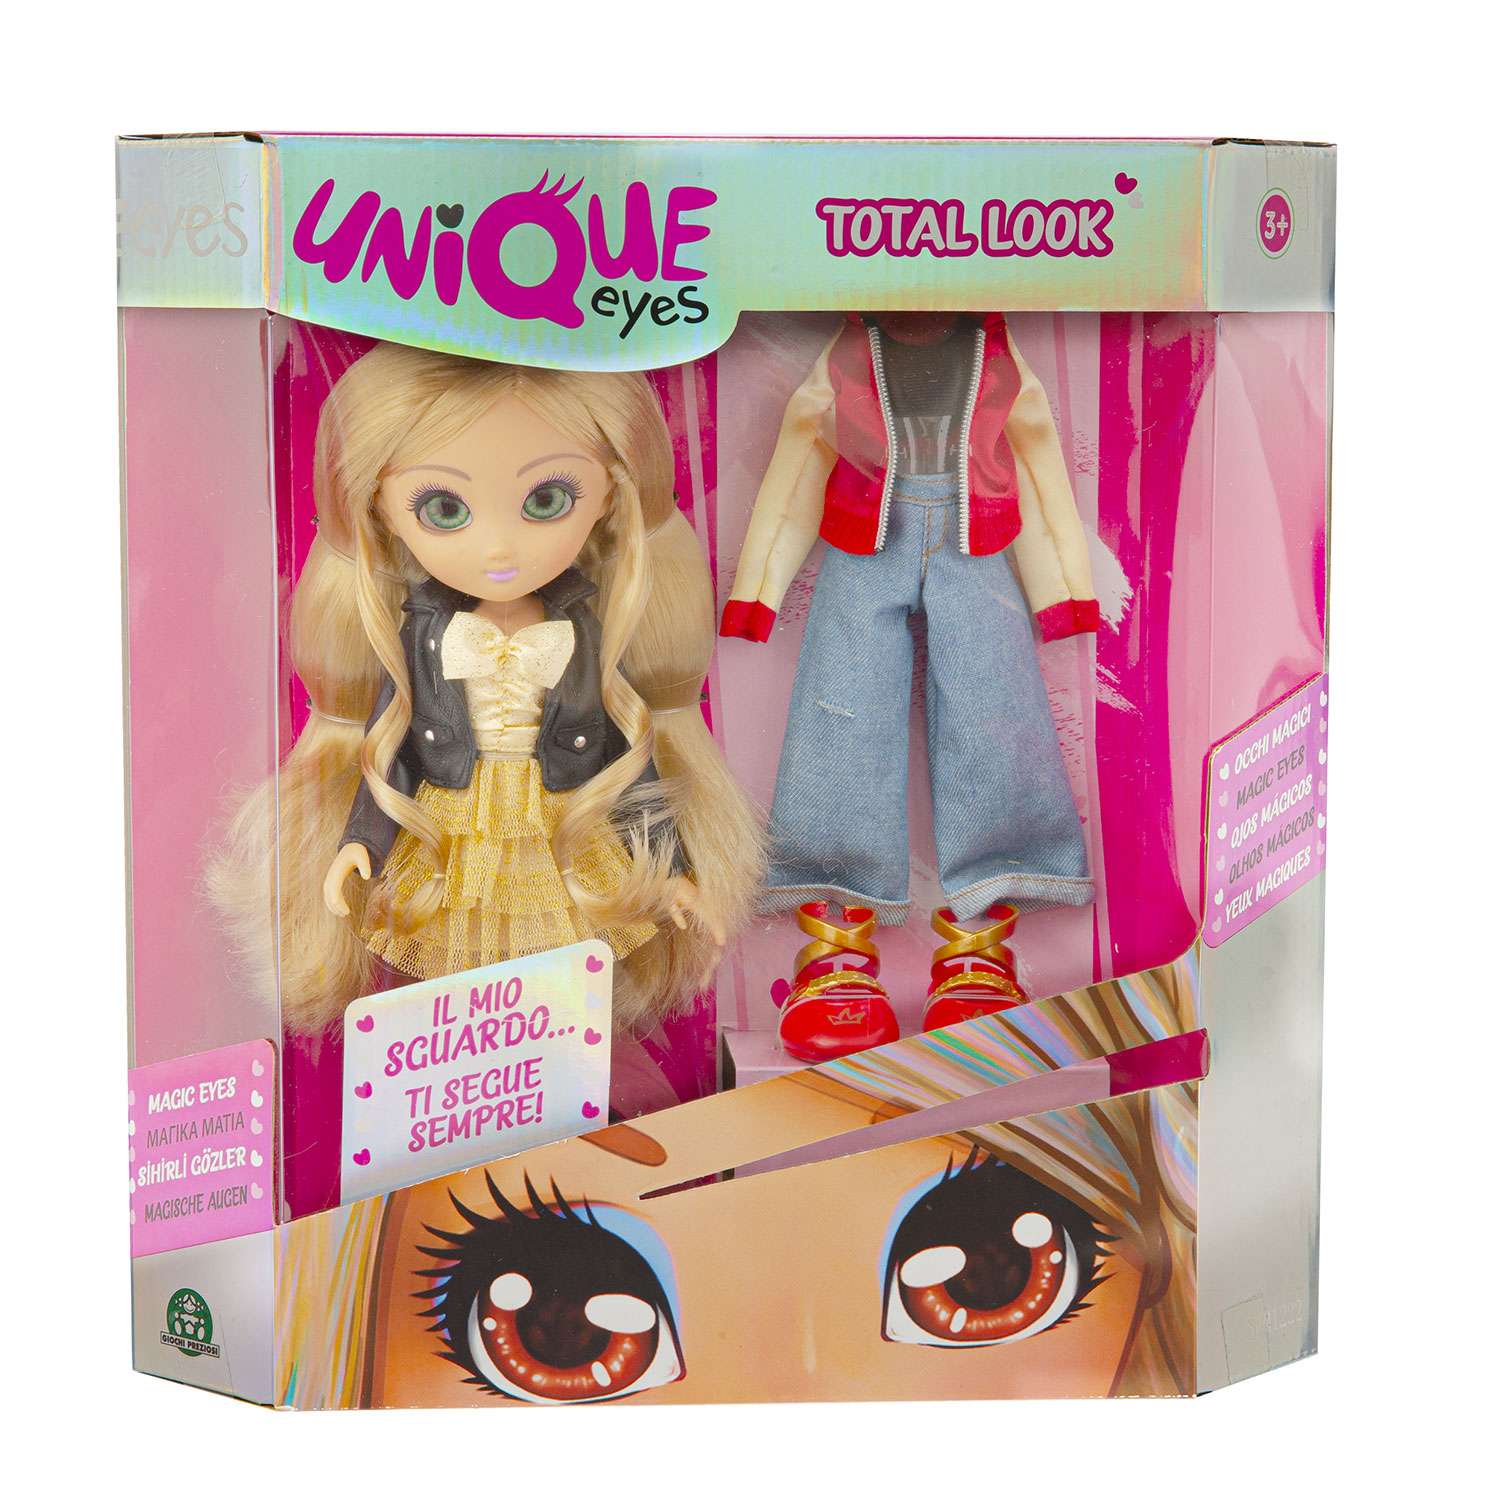 Unique кукла. Куклы Юник айс. Unique Eyes кукла. Кукла Юник Тойз игрушка. Unique Eyes детский мир.